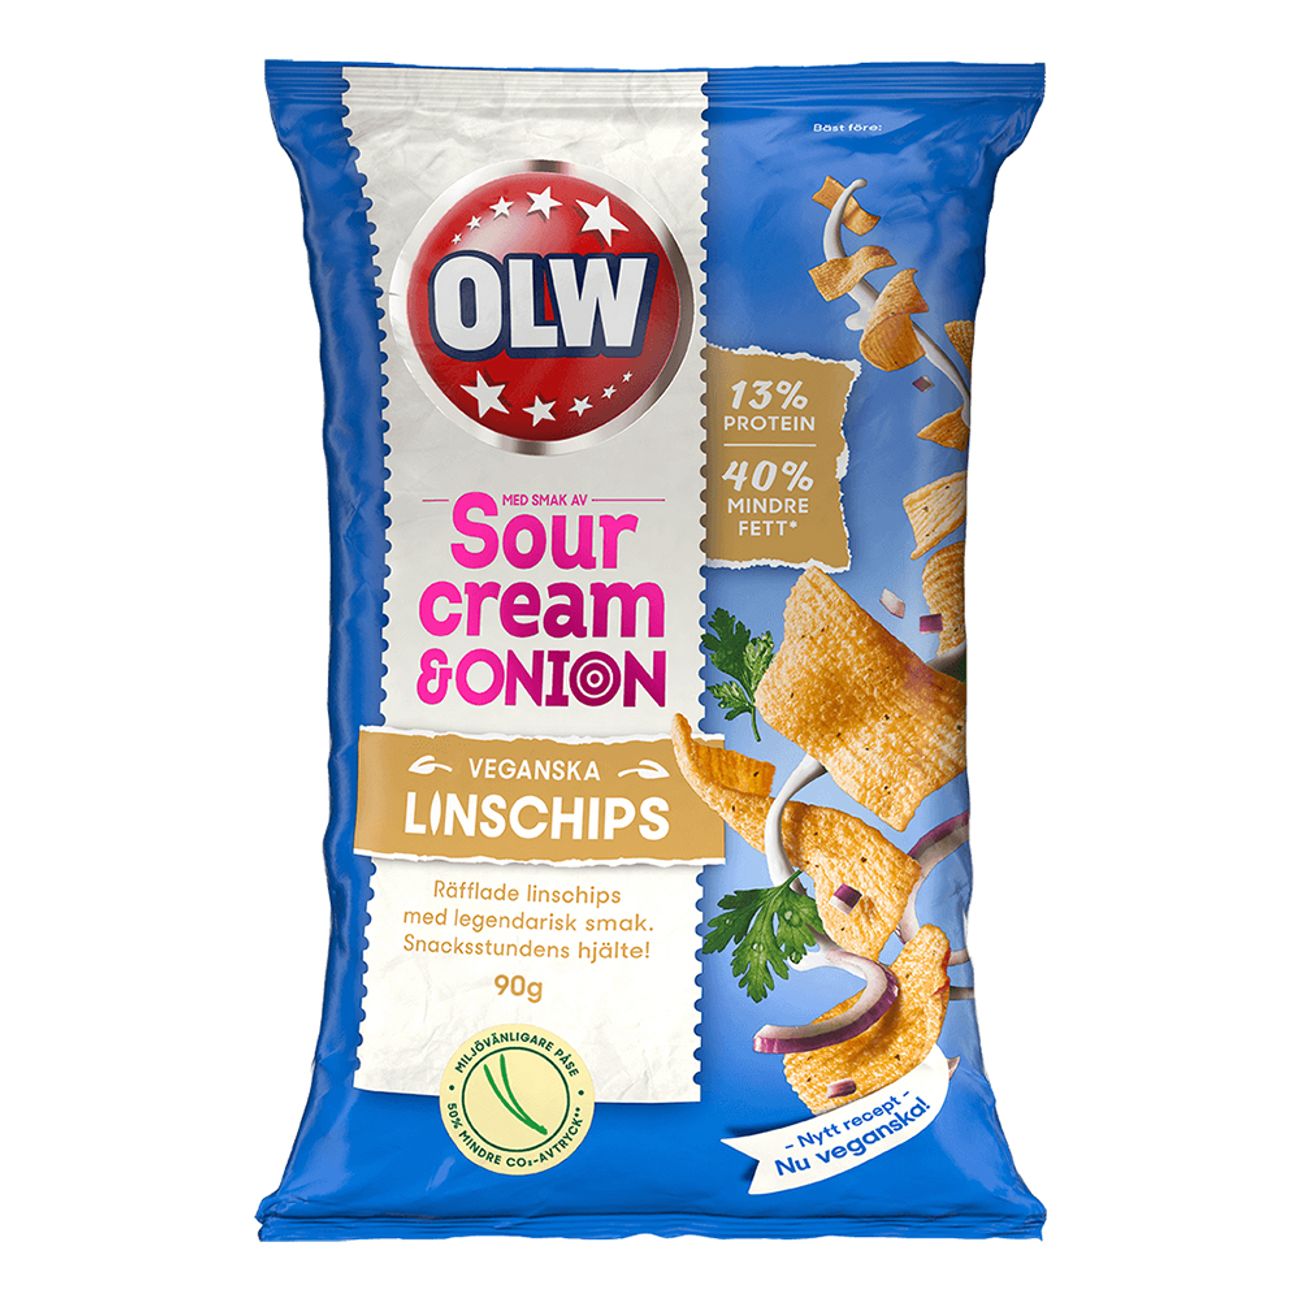 olw-linschips-sourcream-onion-67902-2